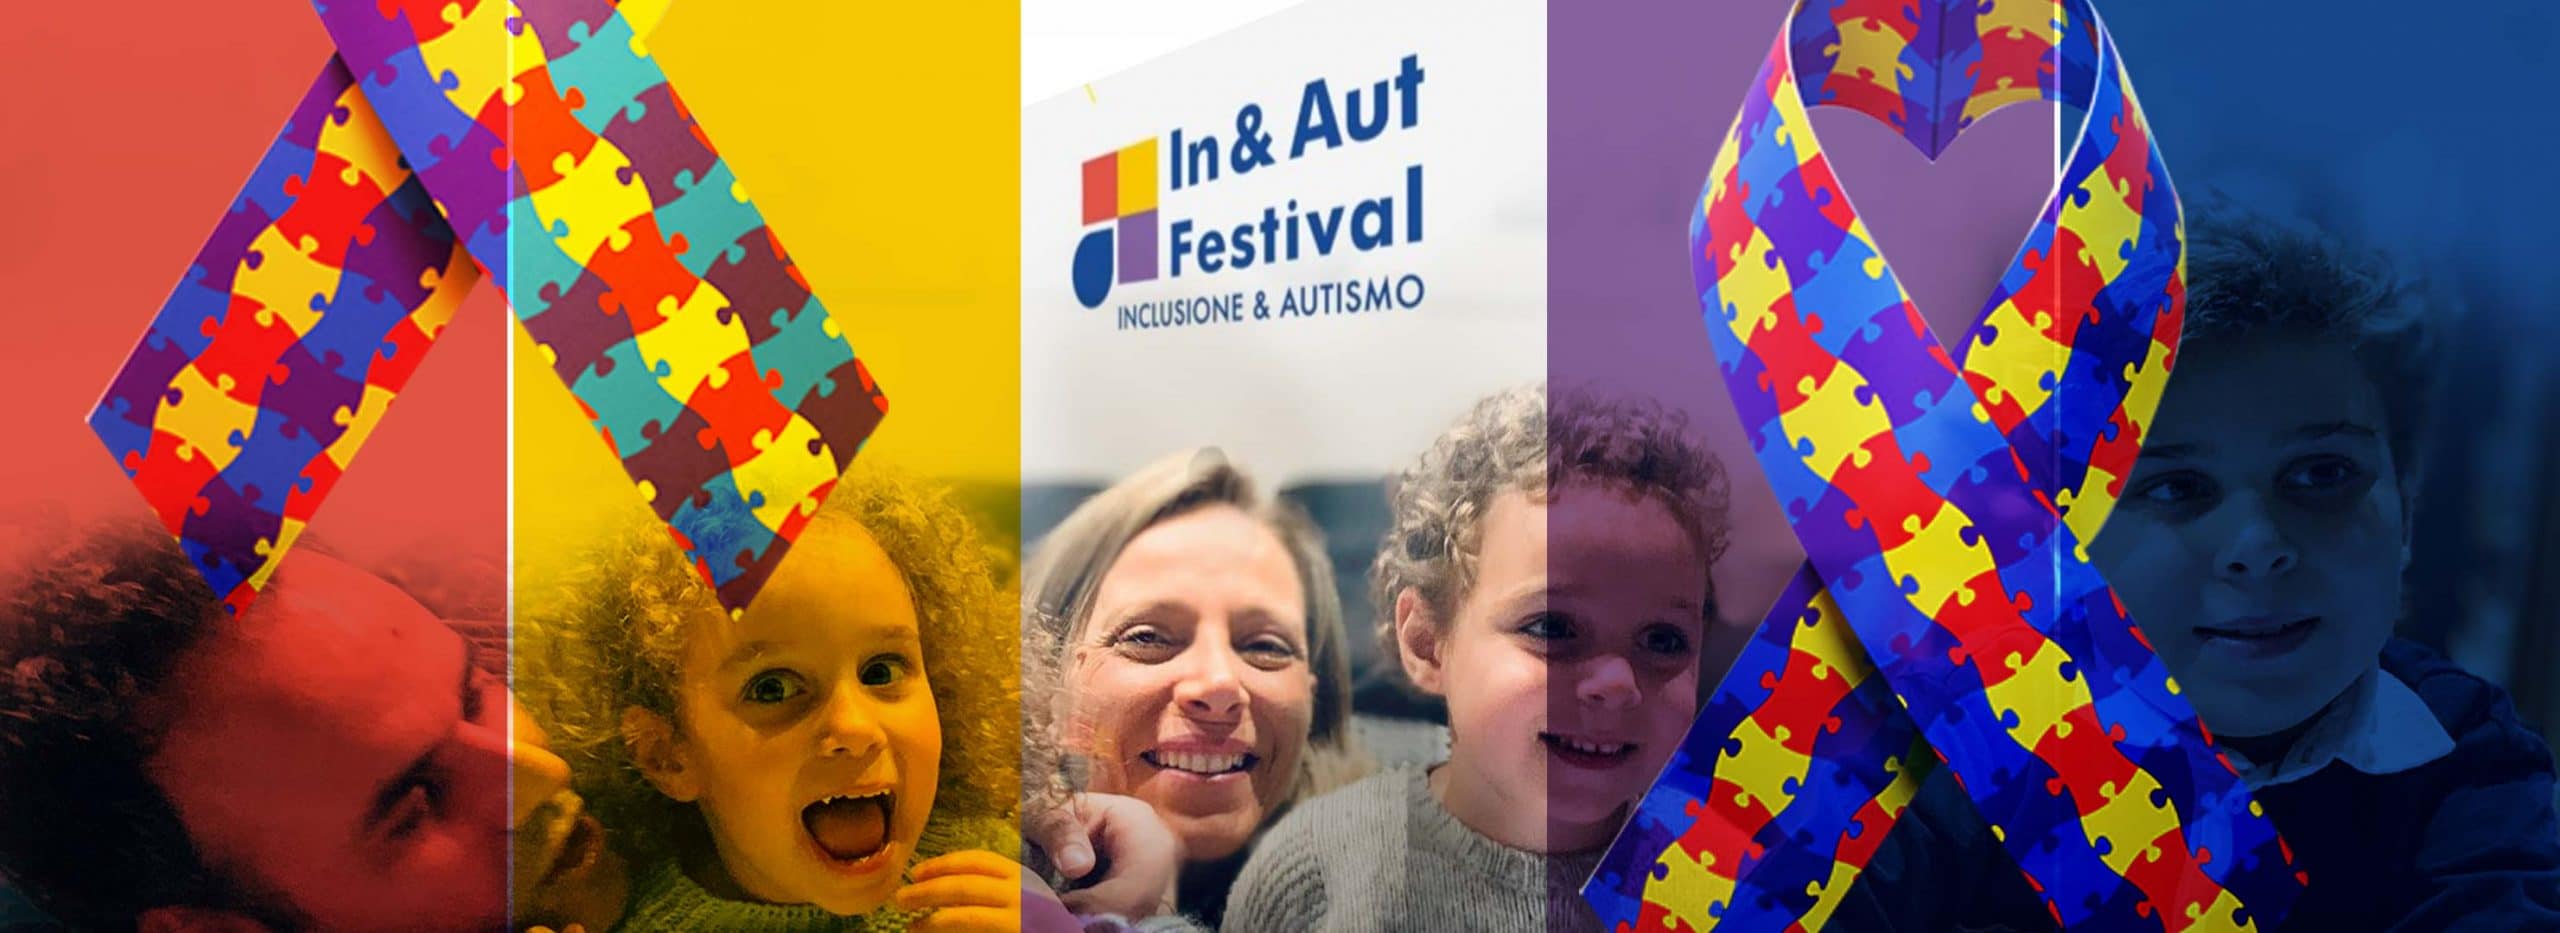 IN&AUT Festival: Milano accoglie il primo festival su Inclusione e Autismo